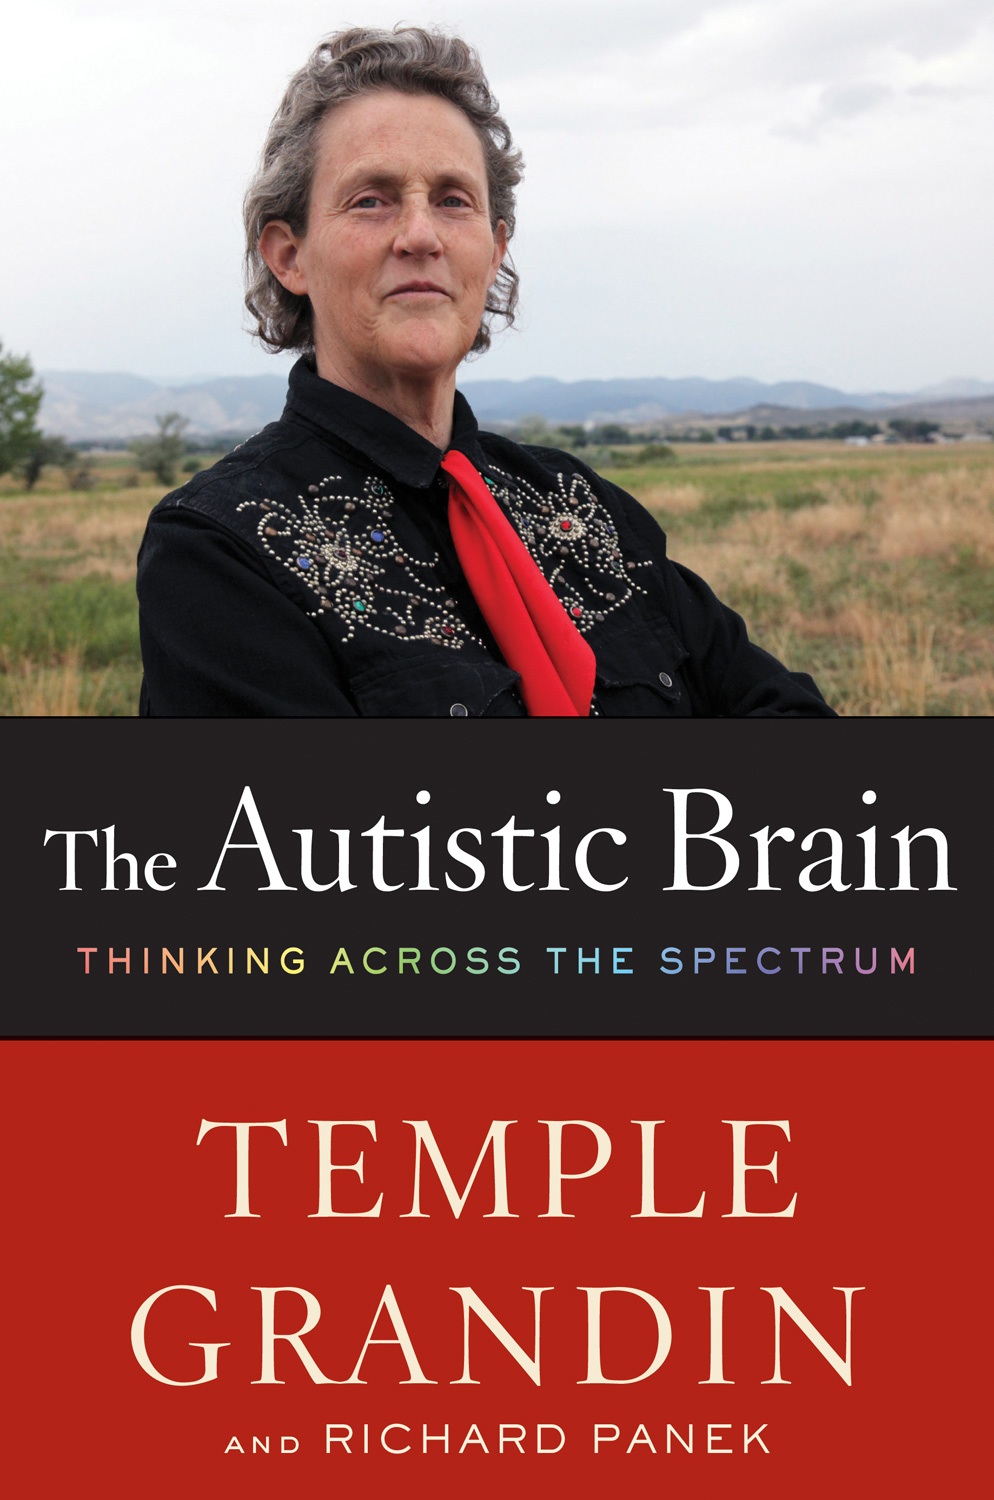 dr temple grandin the autistic brain